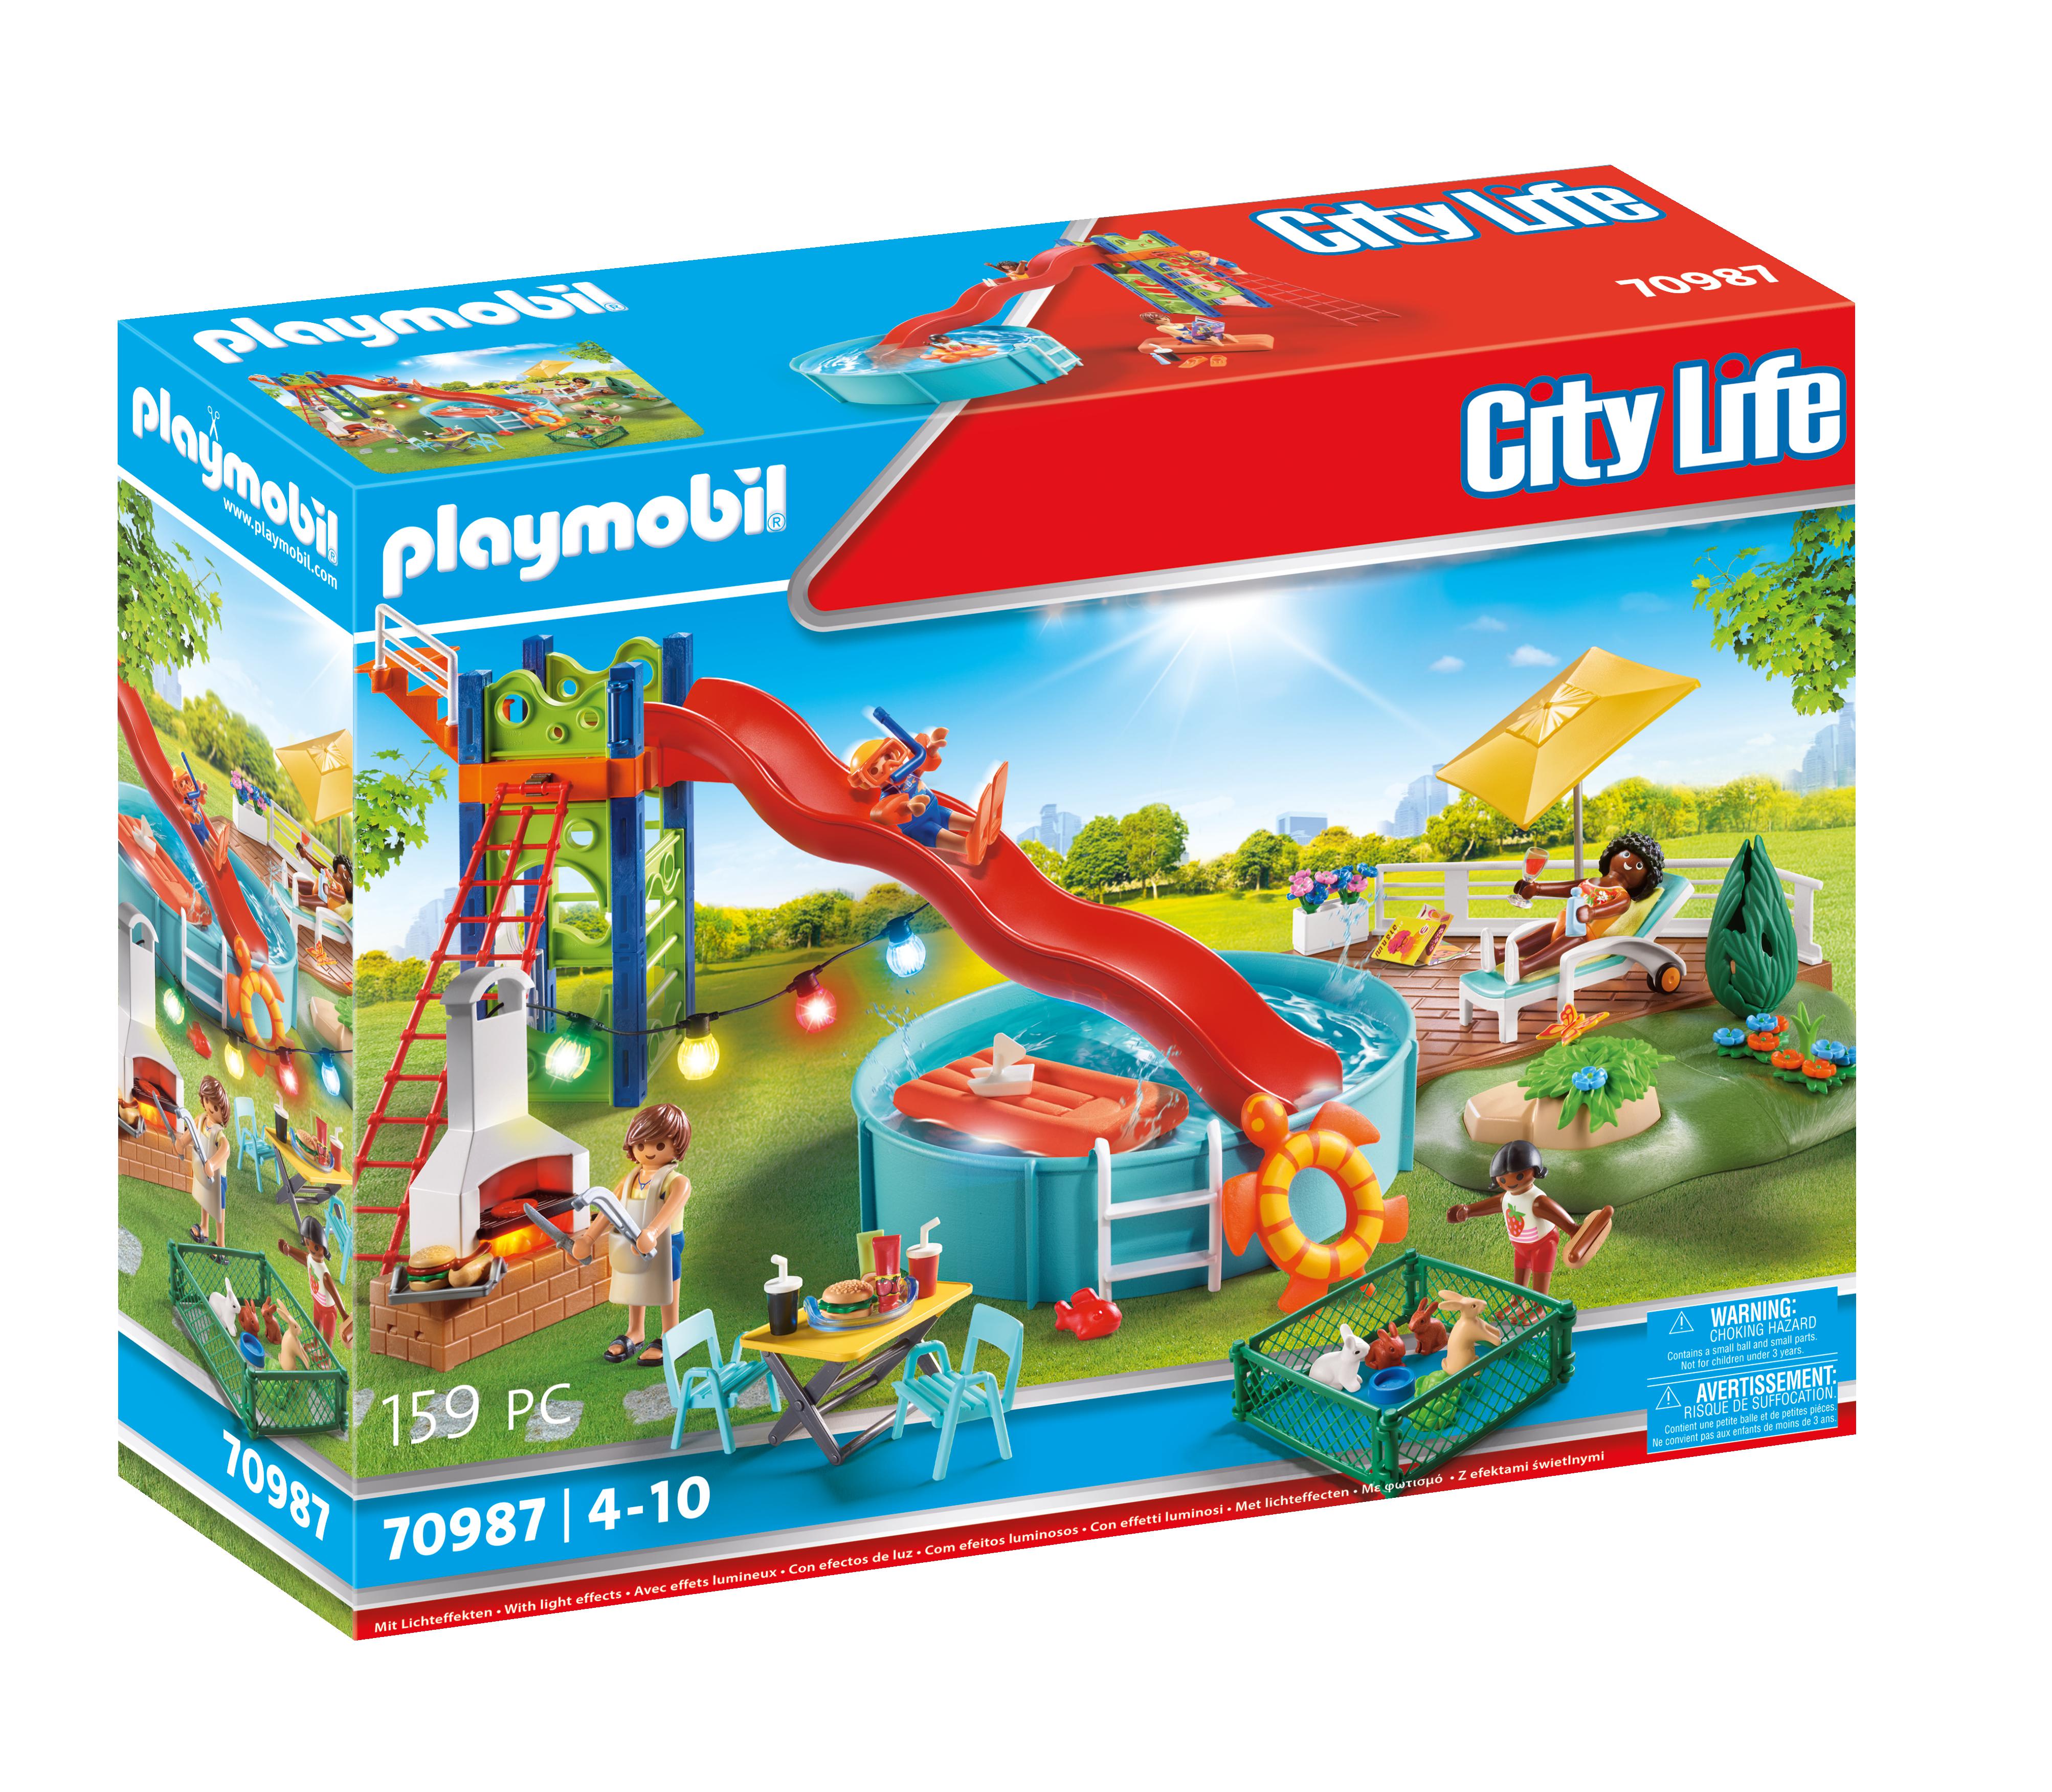 Maison Playmobil avec ou sans accessoires - Playmobil